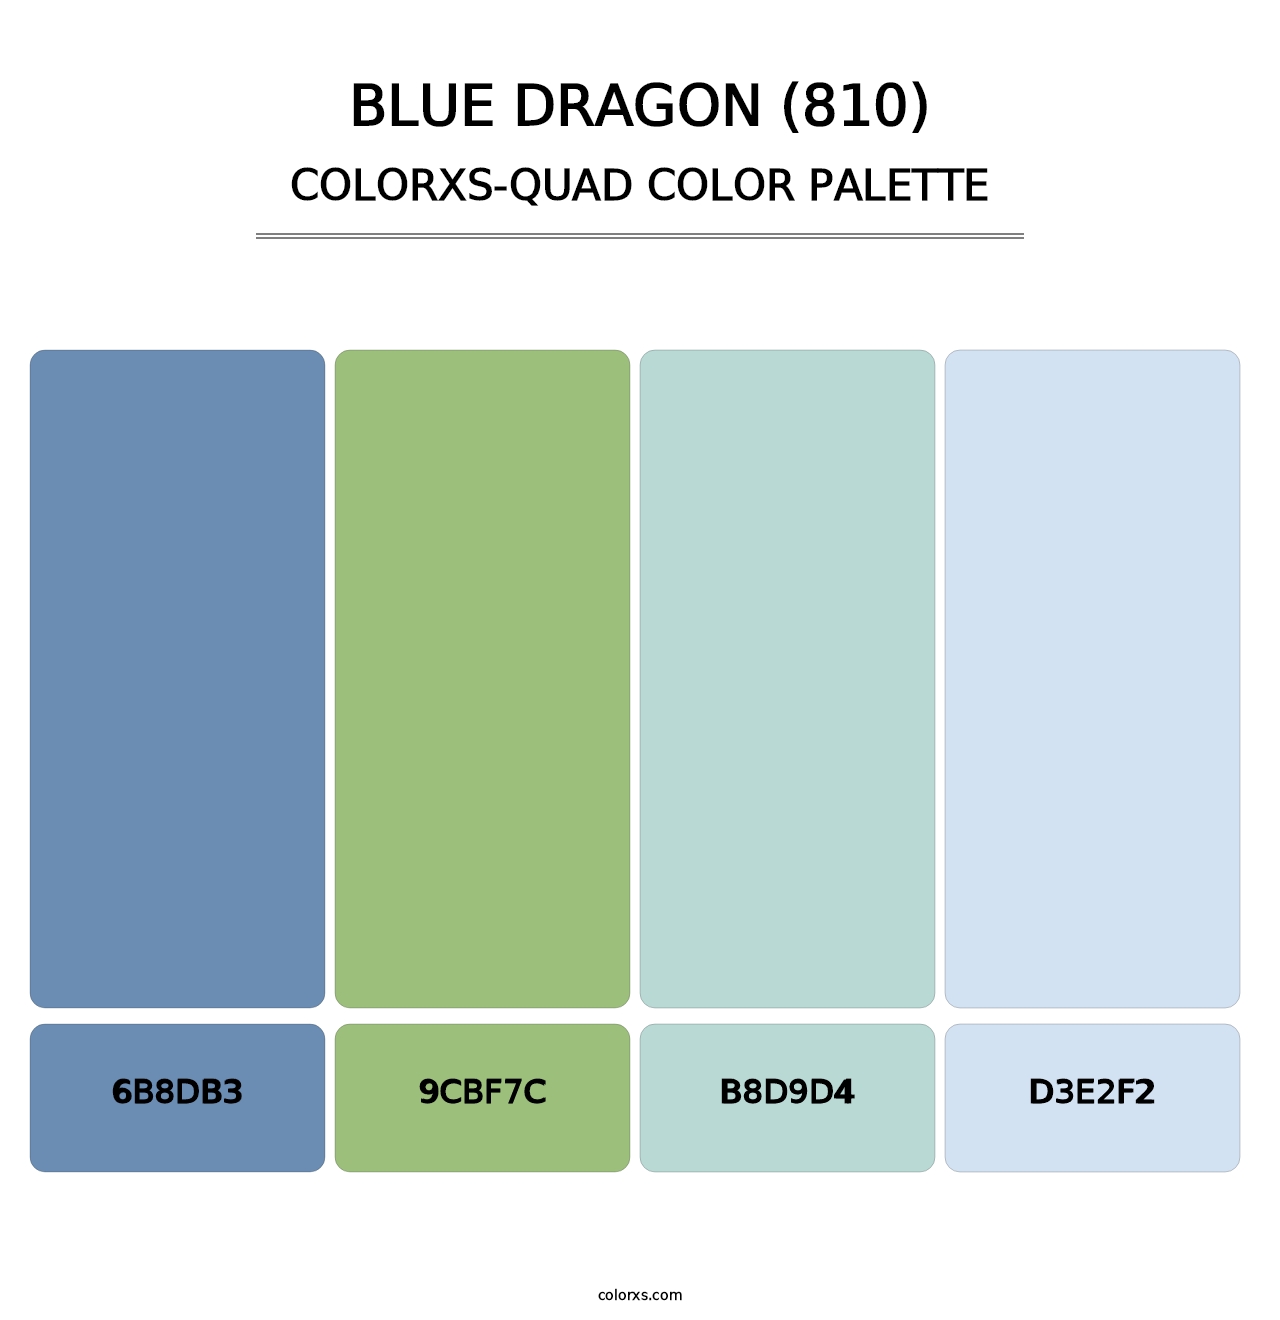 Blue Dragon (810) - Colorxs Quad Palette